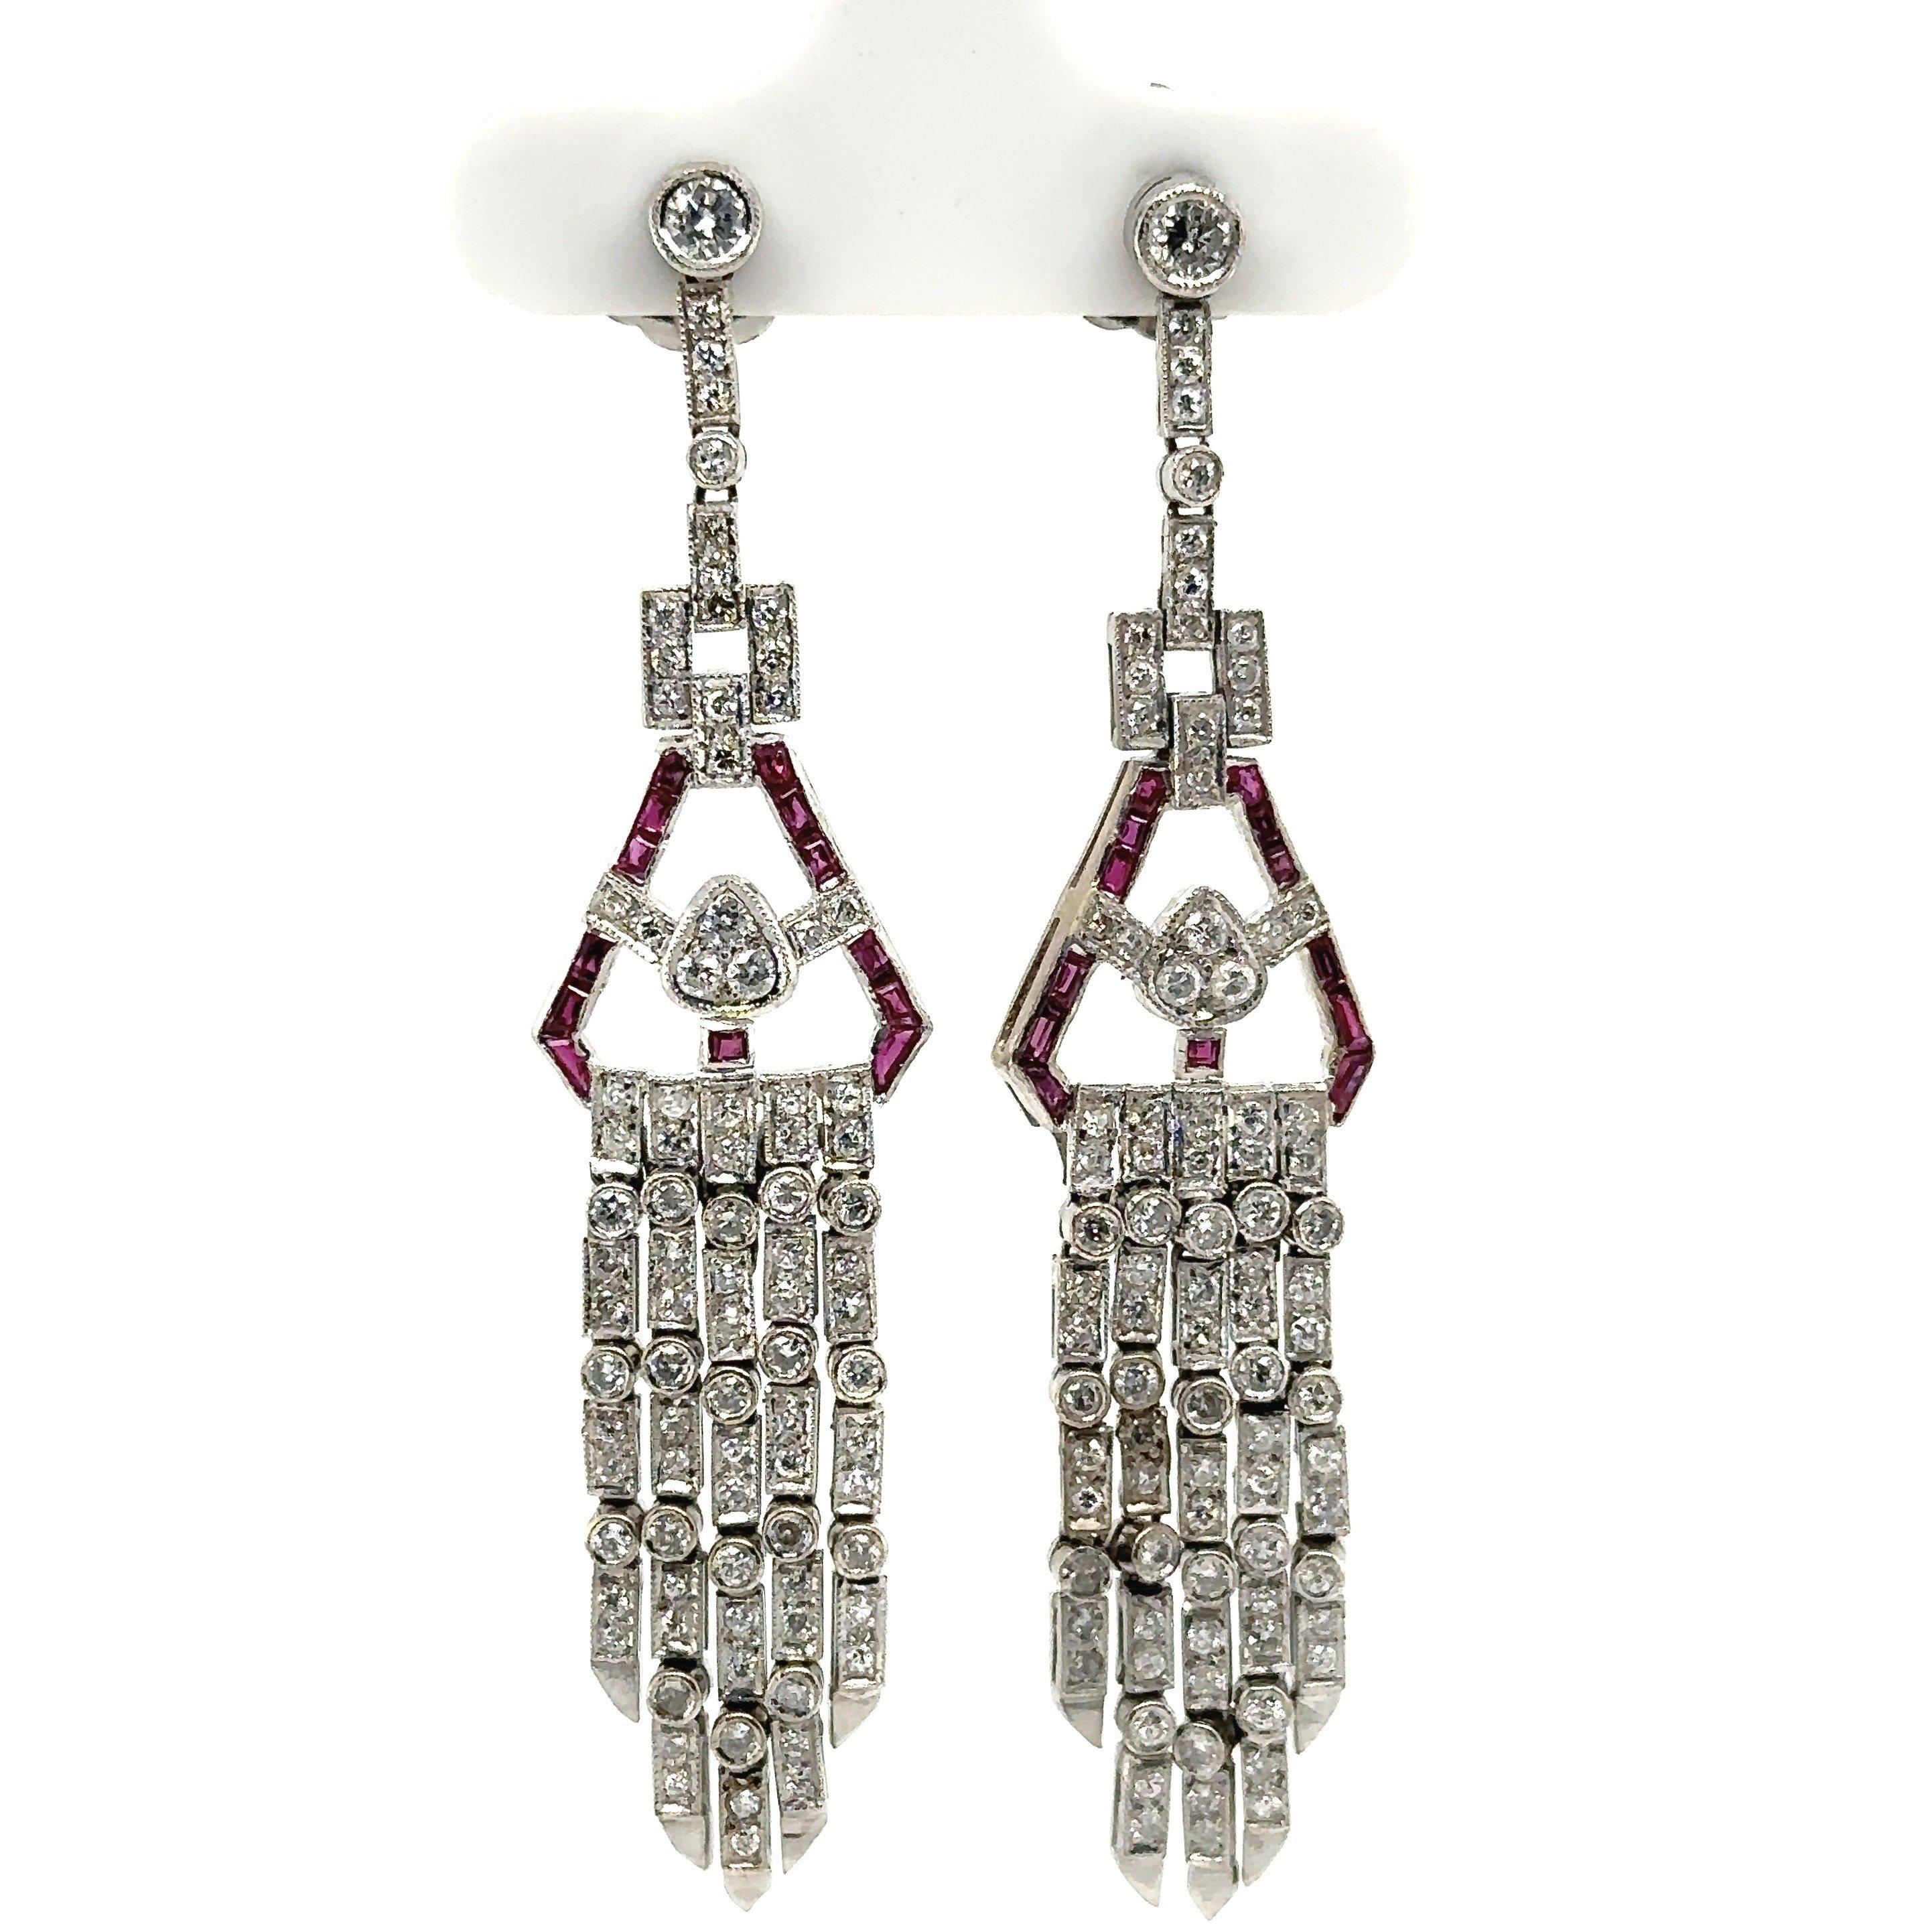 Cette superbe paire de boucles d'oreilles chandelier en platine, diamant et rubis, de style Art déco, date des années 1950. Ils contiennent environ 1,5 carat de diamants et 1,5 carat de pierres précieuses.  .60CT rubis poids total. La longueur de la